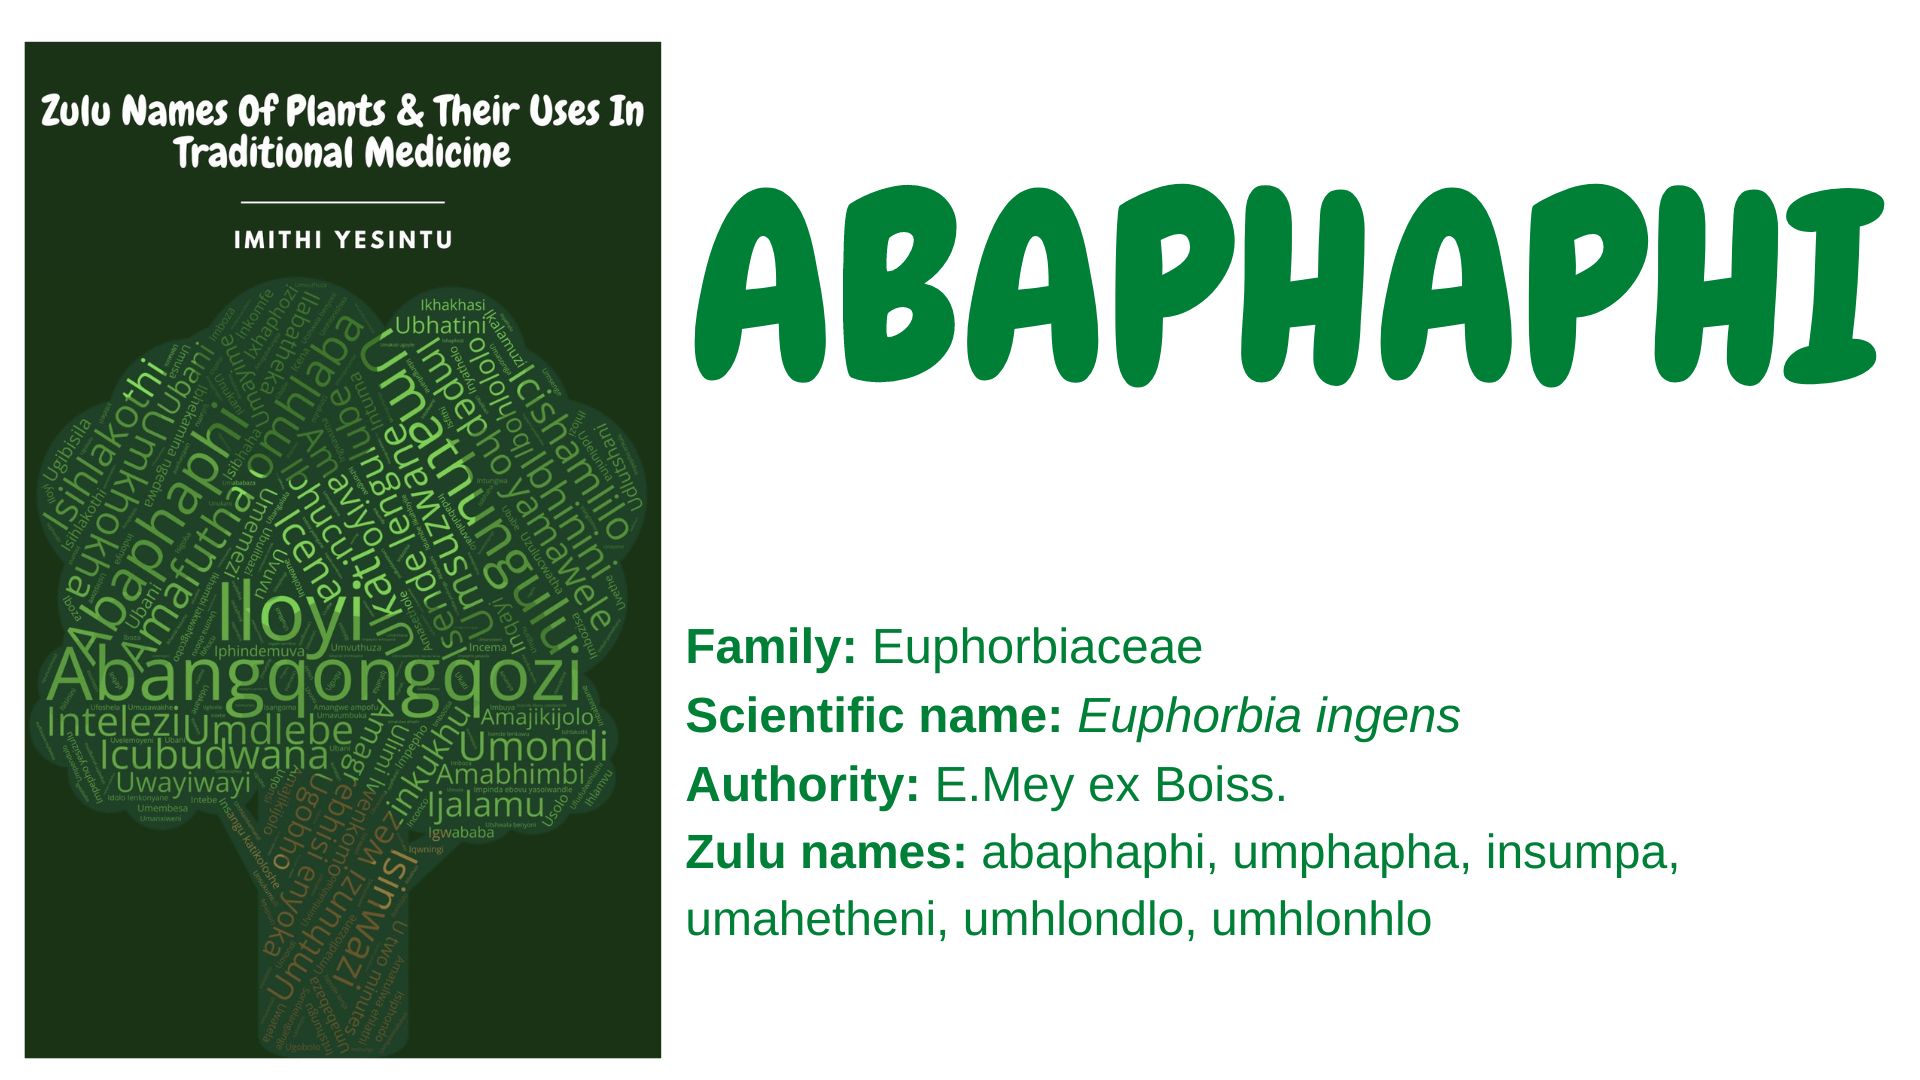 Abaphaphi